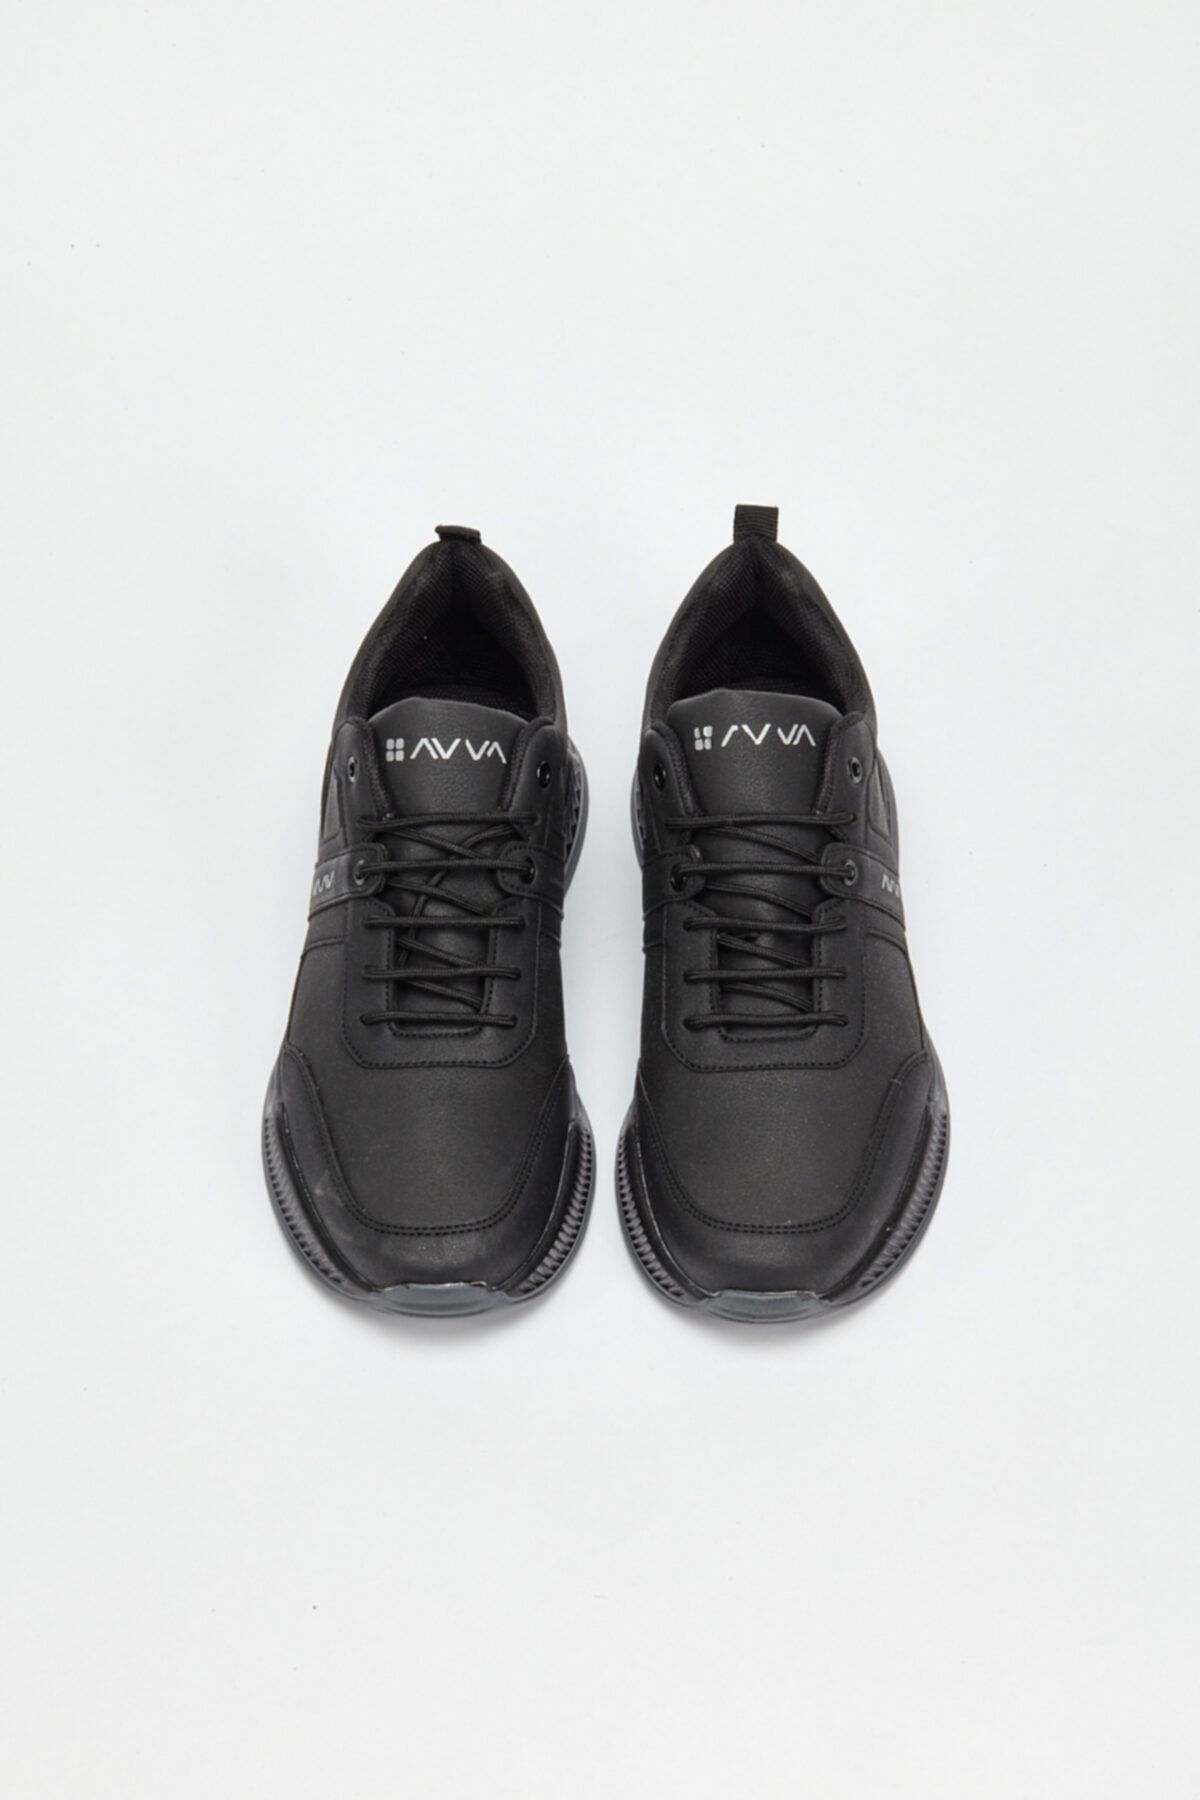 Avva Erkek Siyah Spor Ayakkabı A02y8016